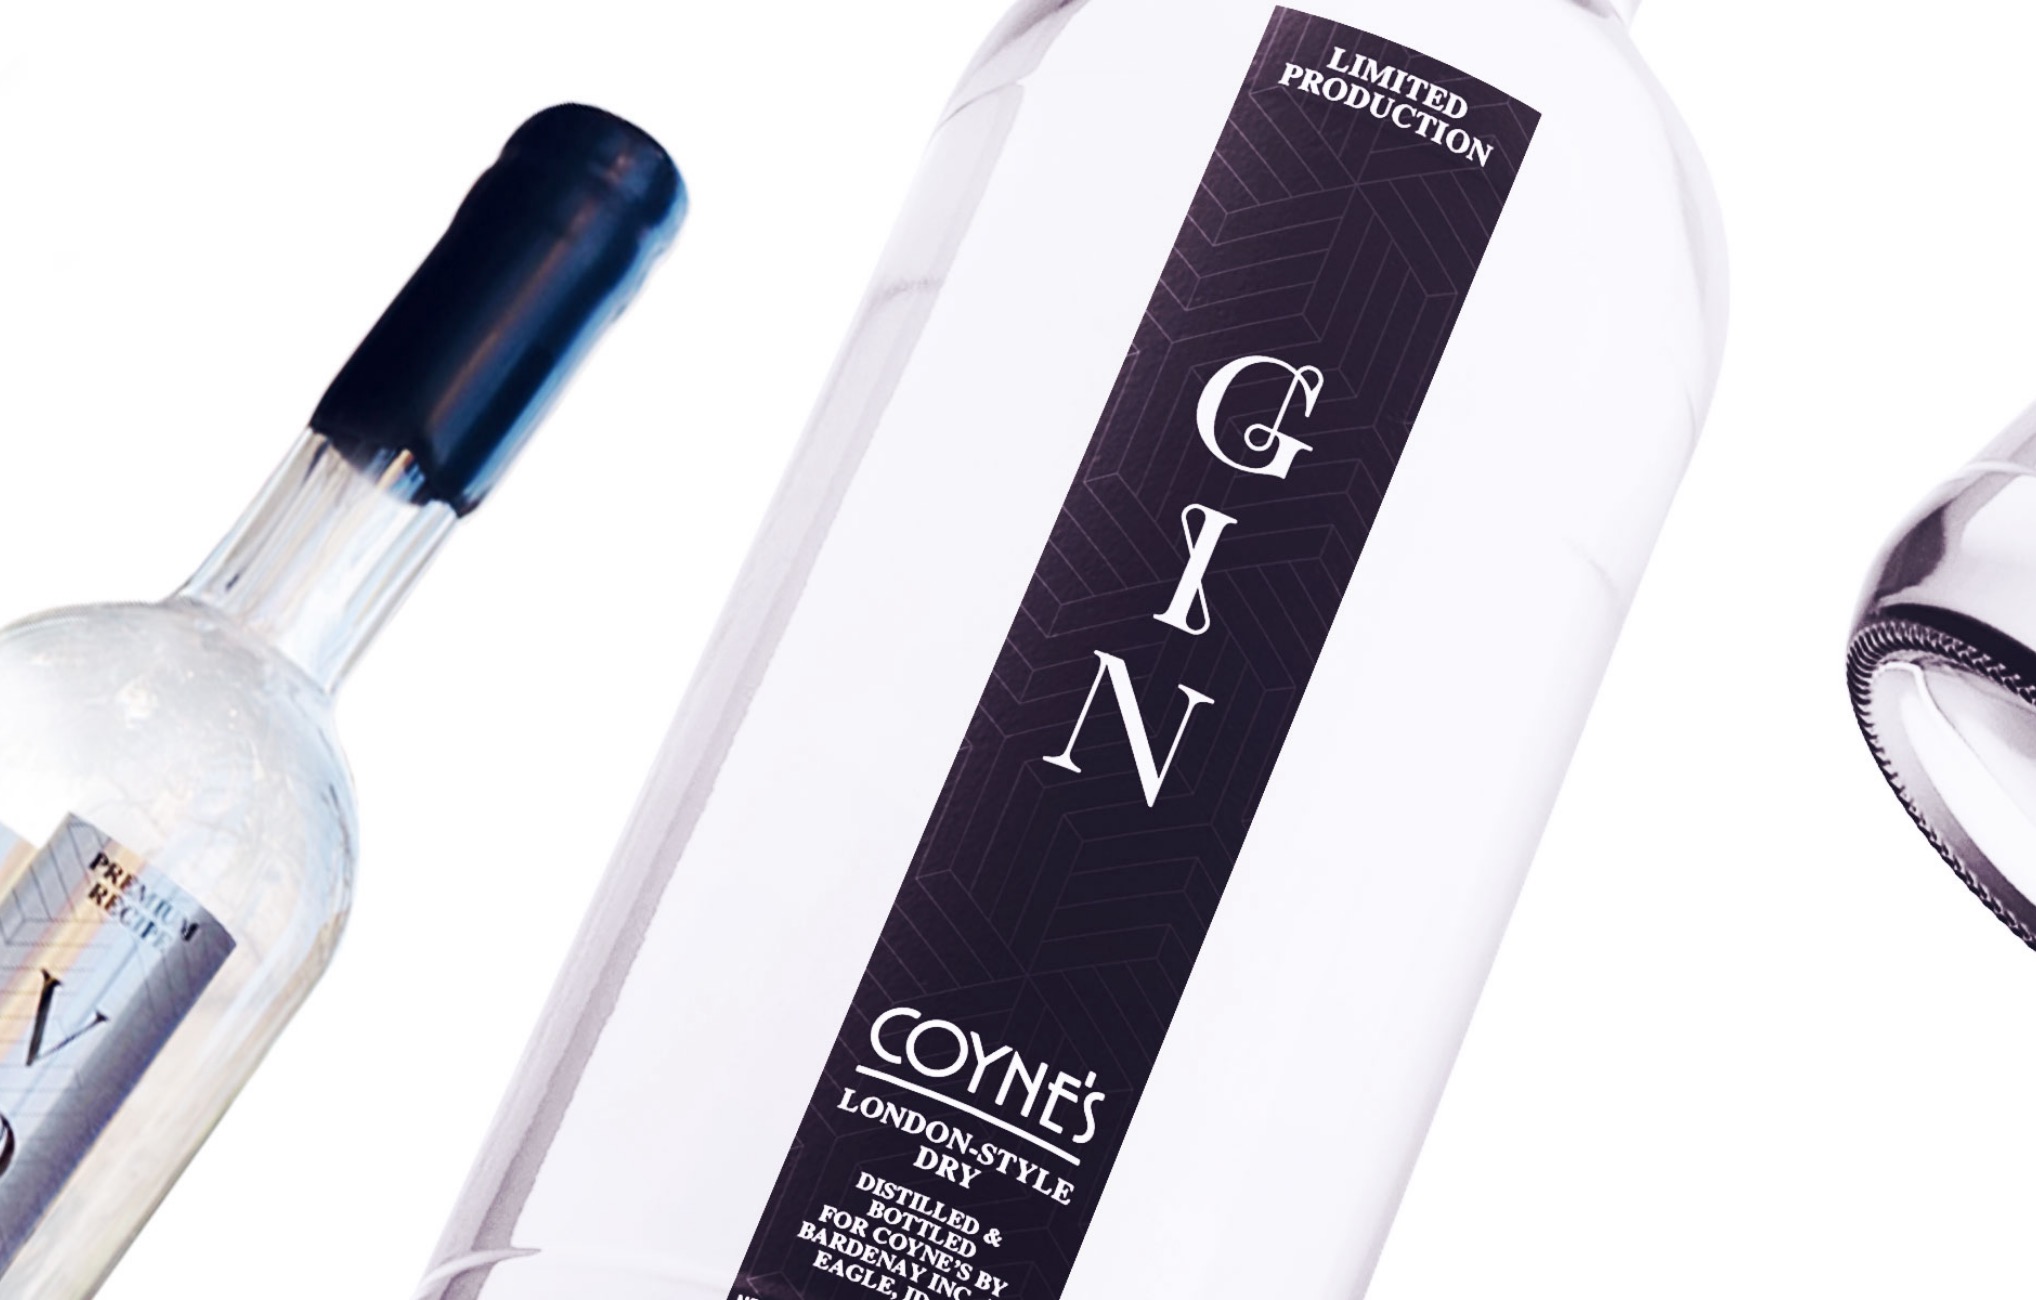 Coyne's Gin